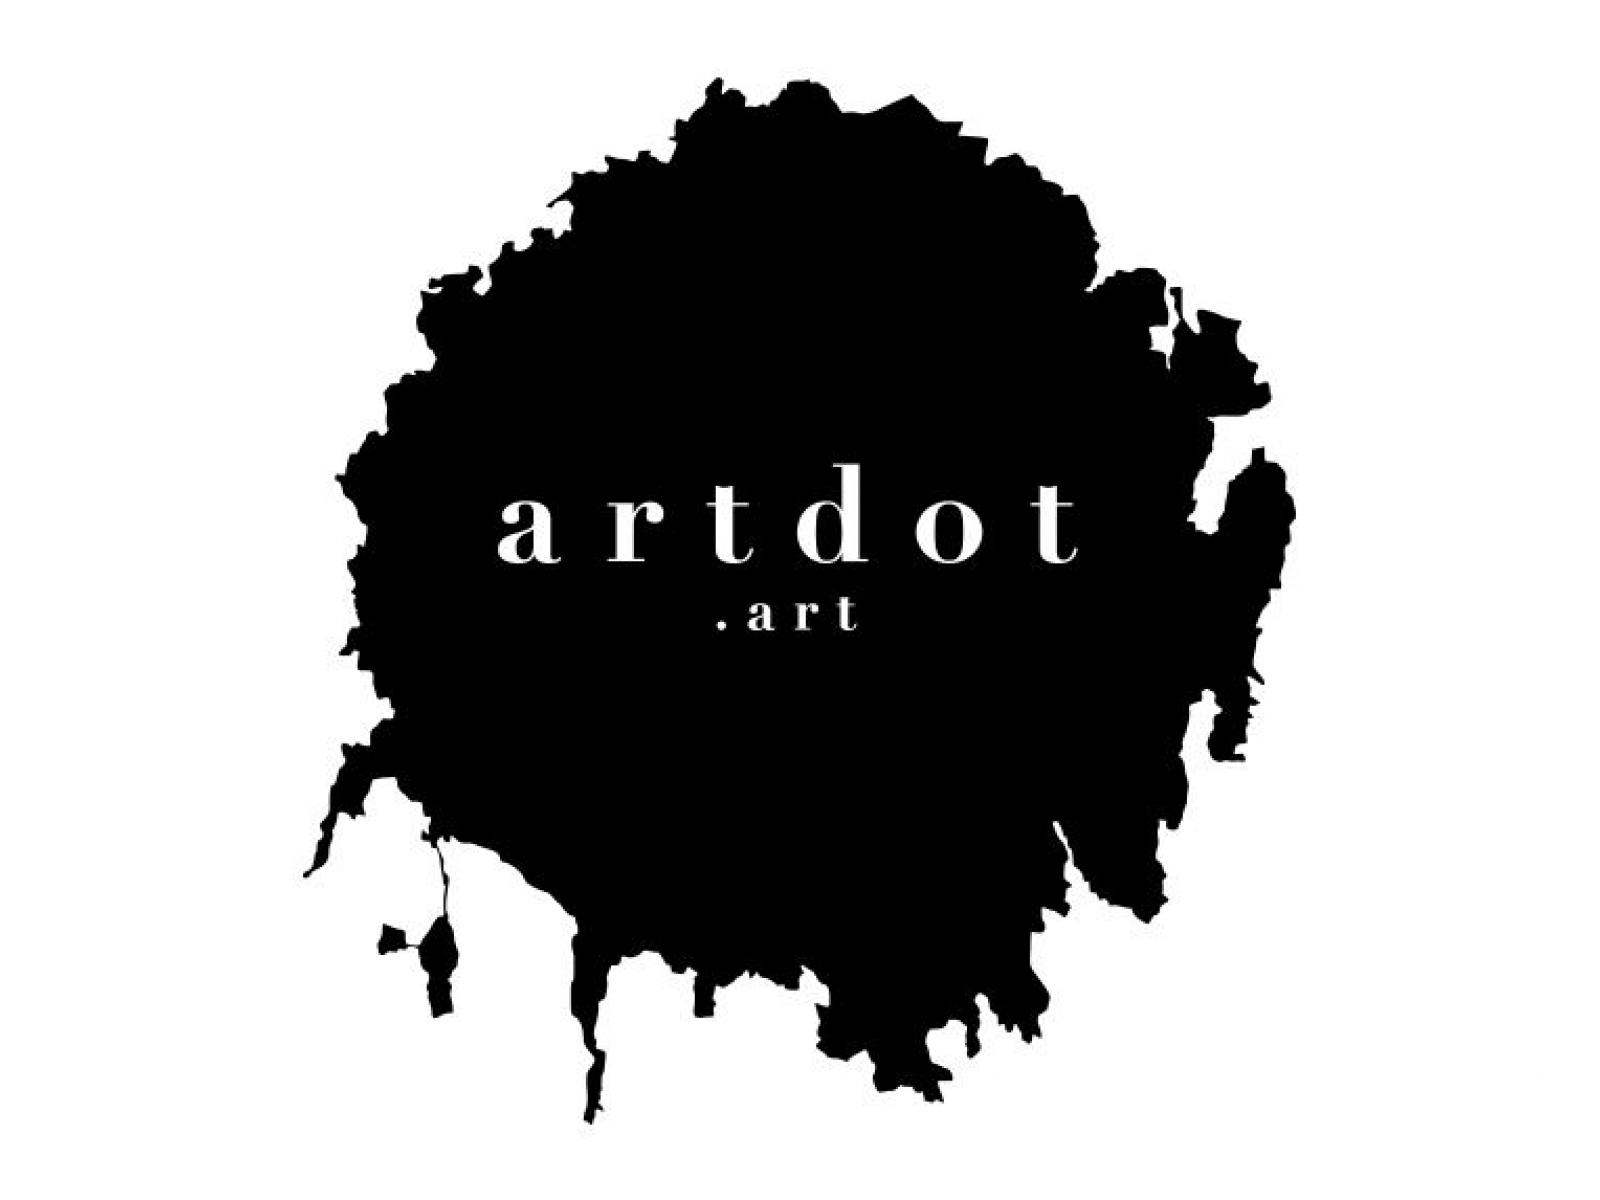 Artdot.art